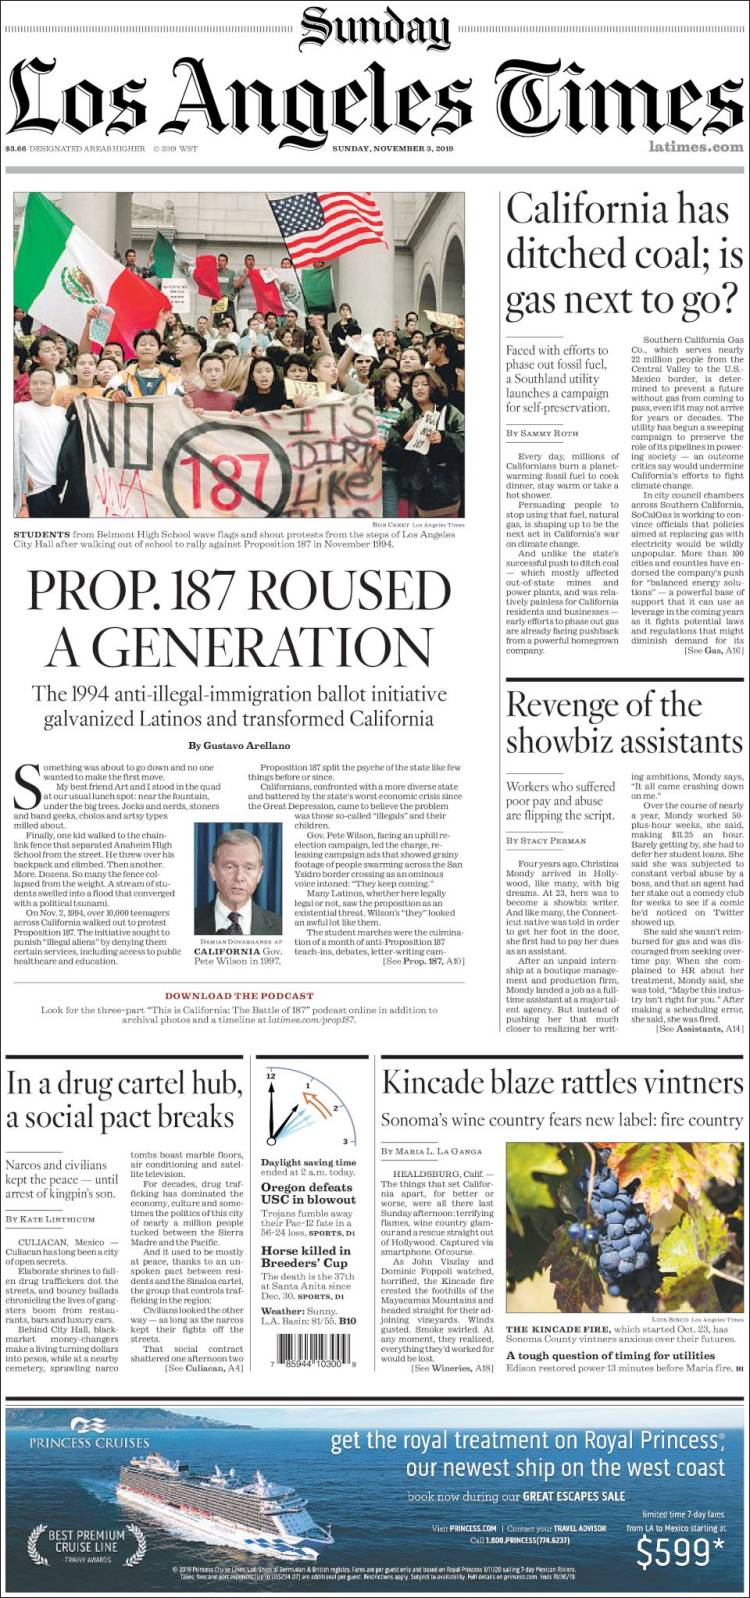 صفحه اول روزنامه لس آنجلس تایمز/کالیفرنیا وابستگی به زغال سنگ را کنار گذاشت